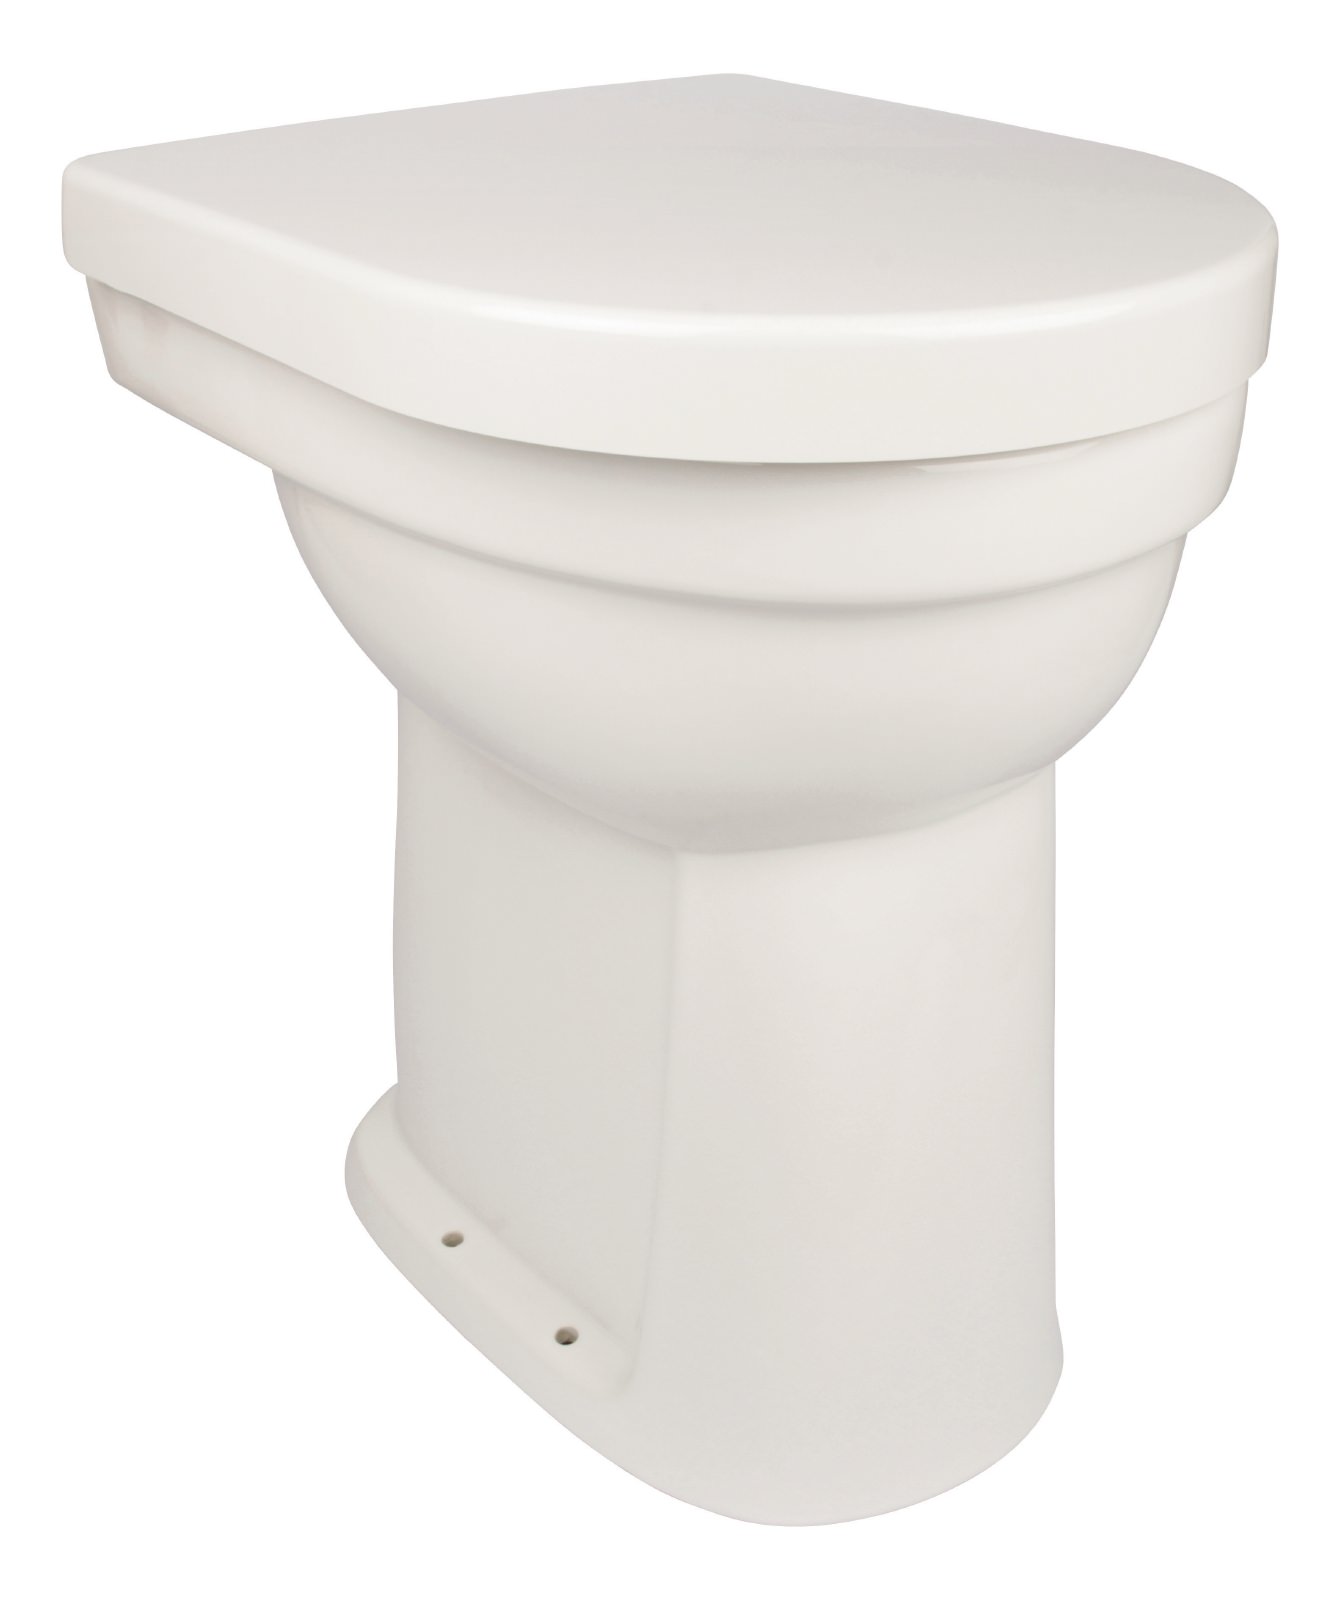 Stand-WC mit 10 cm Erhöhung in Weiß, Flachspüler mit Toilettendeckel